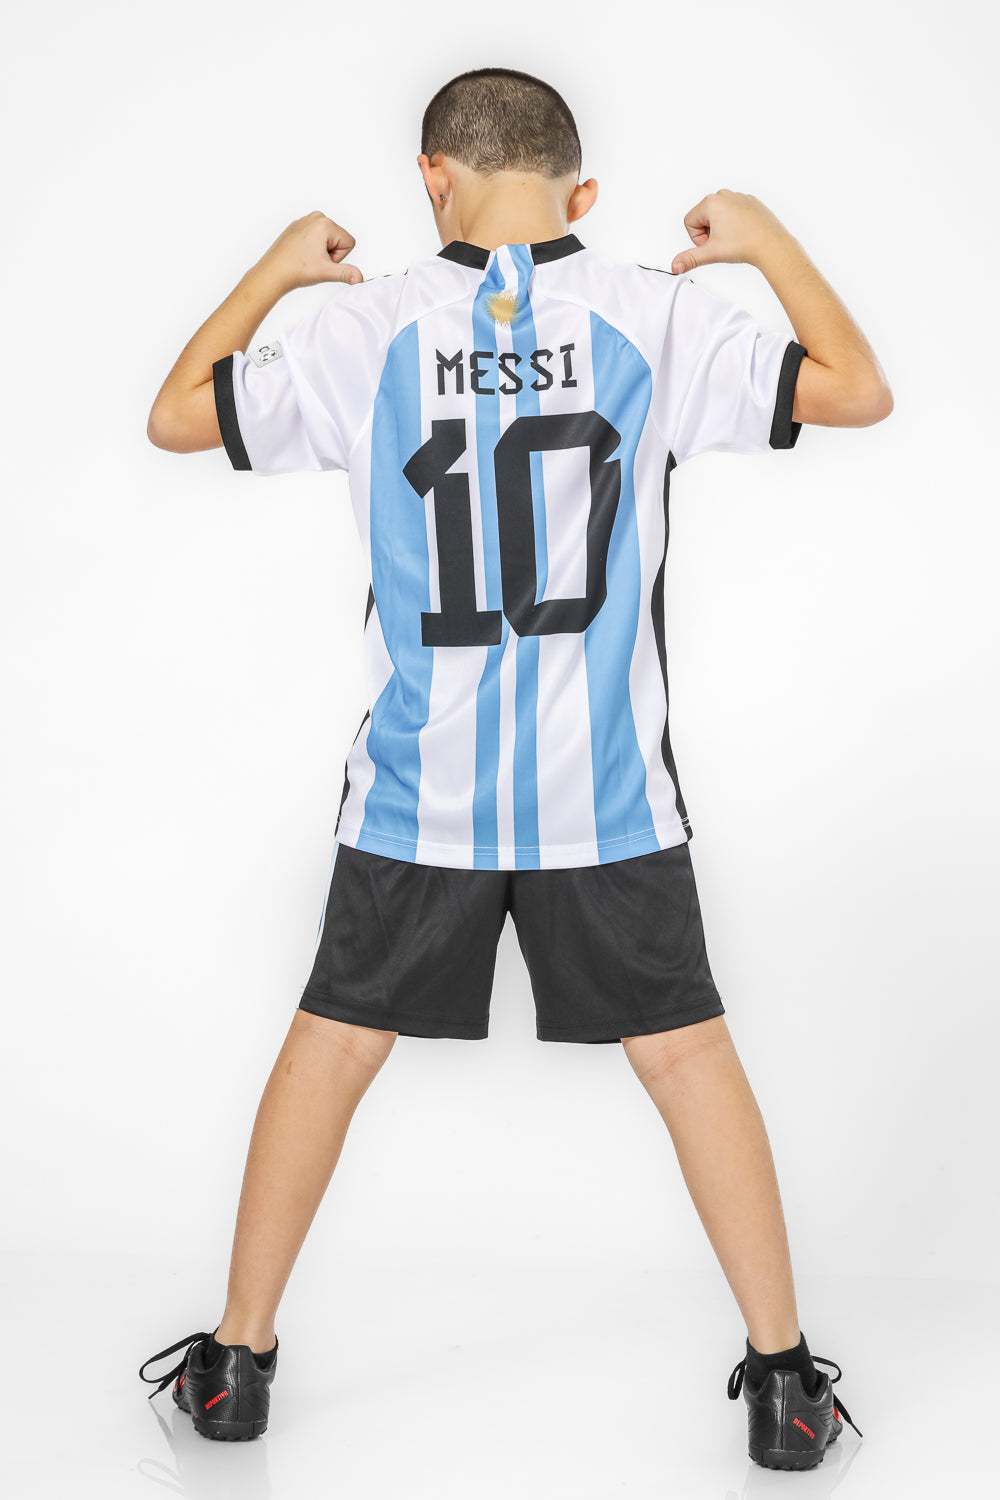 חליפת ילדים מדי ארגנטינה כדורגל מסי